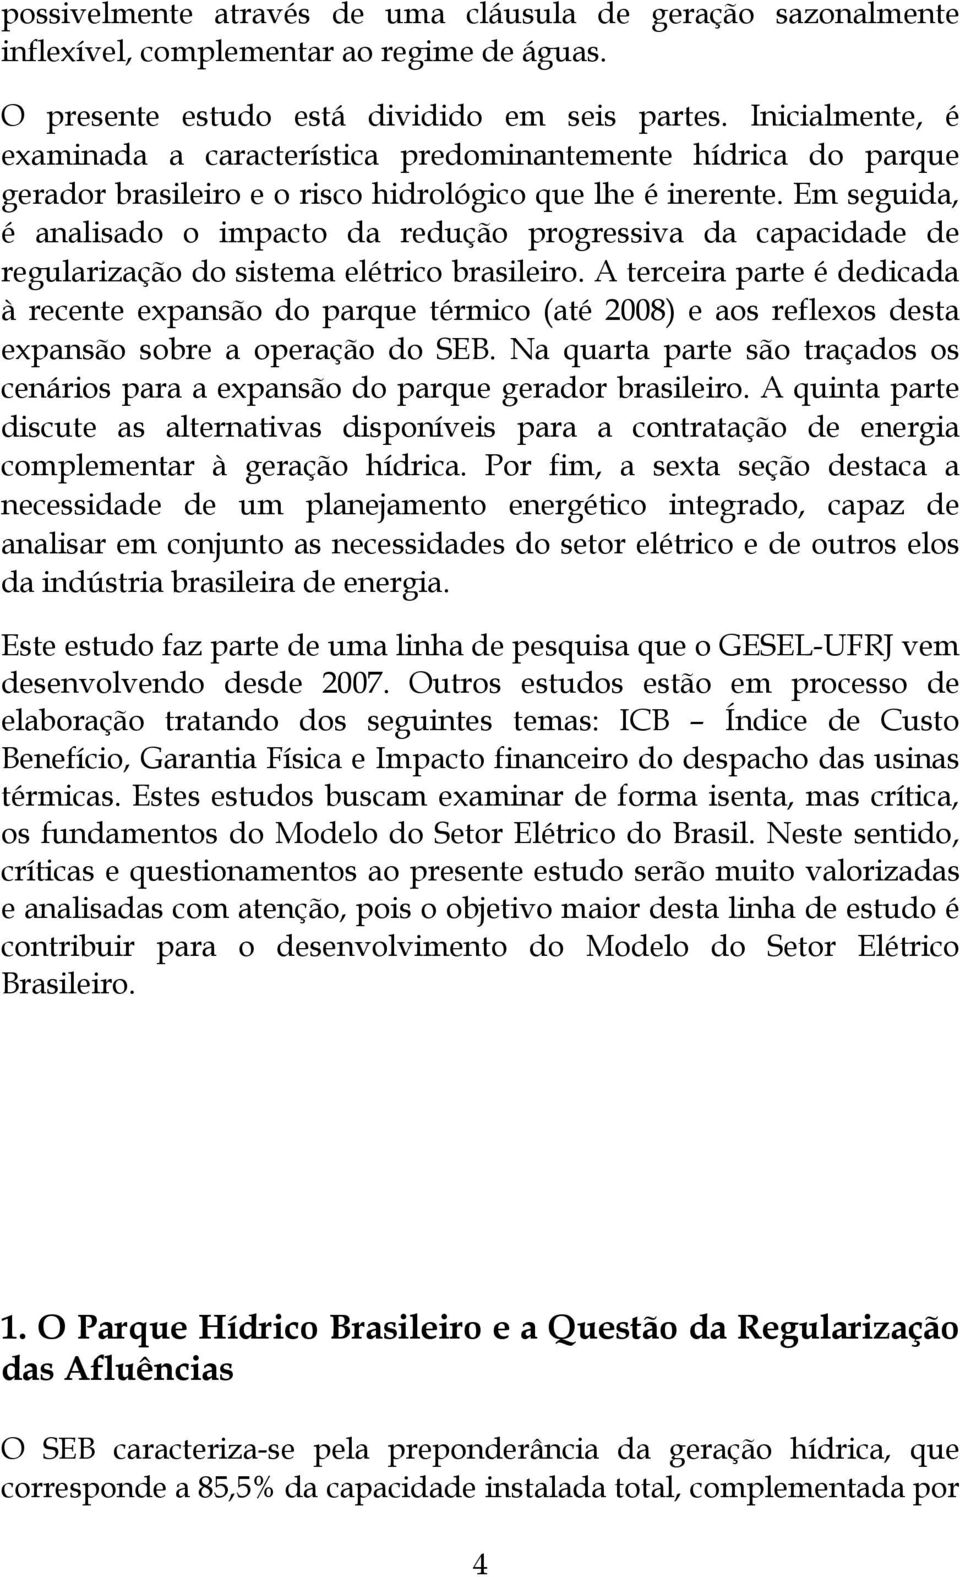 Em seguida, é analisado o impacto da redução progressiva da capacidade de regularização do sistema elétrico brasileiro.